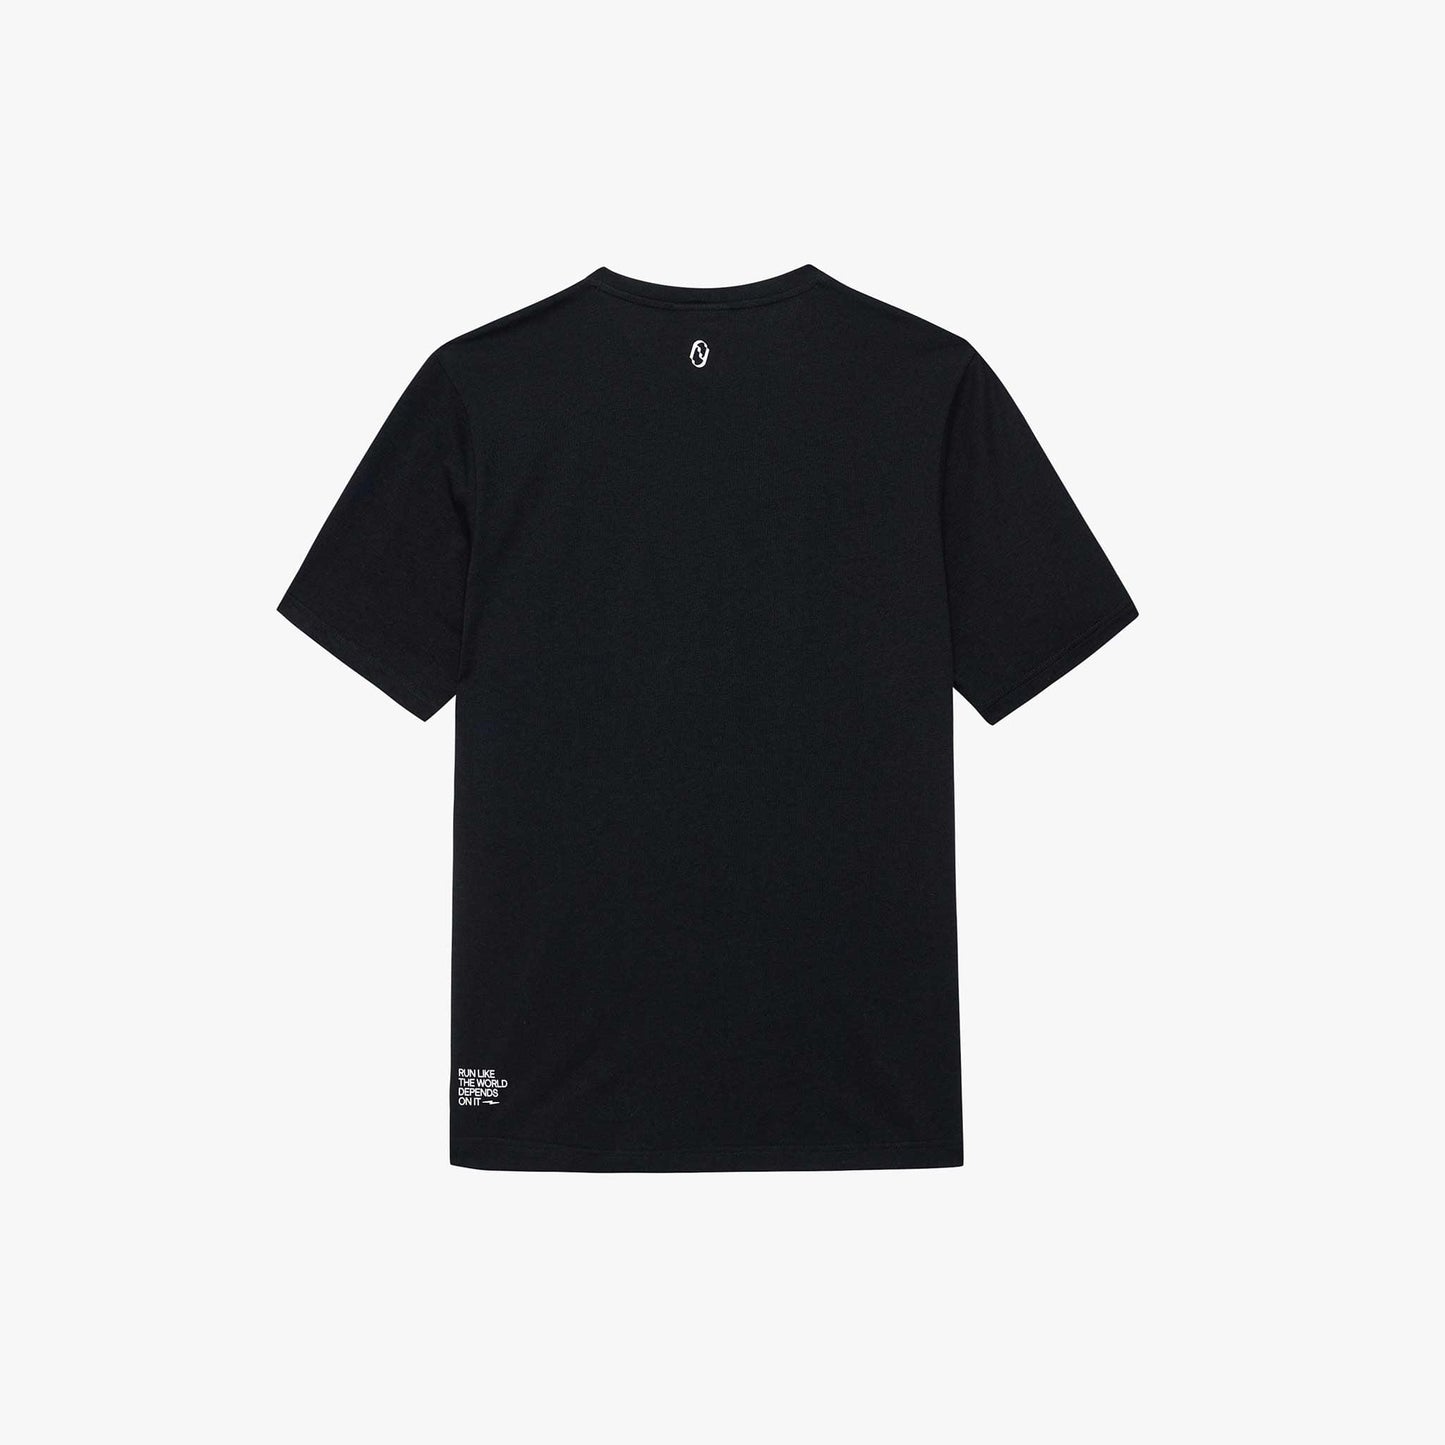 Men's LegacyTech T-Shirt - Black - Core